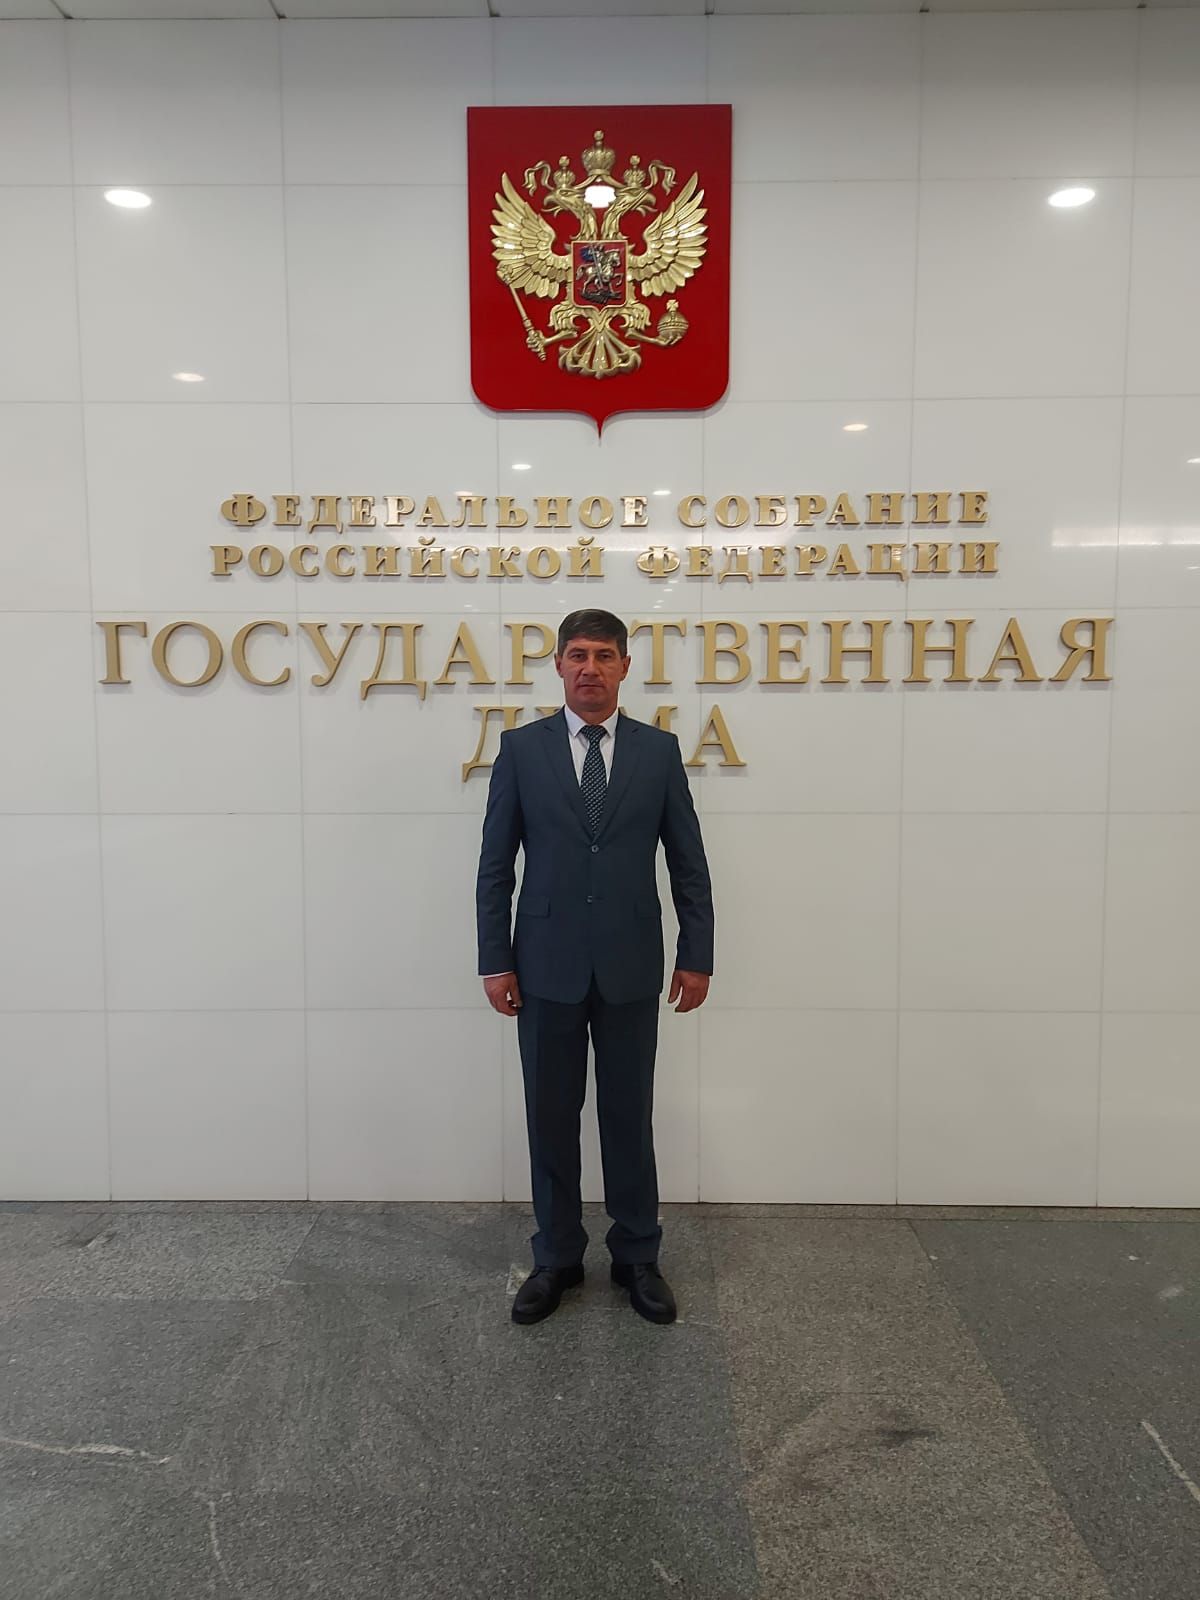 Линар Маняпов посетил Государственную Думу РФ в составе республиканской делегации